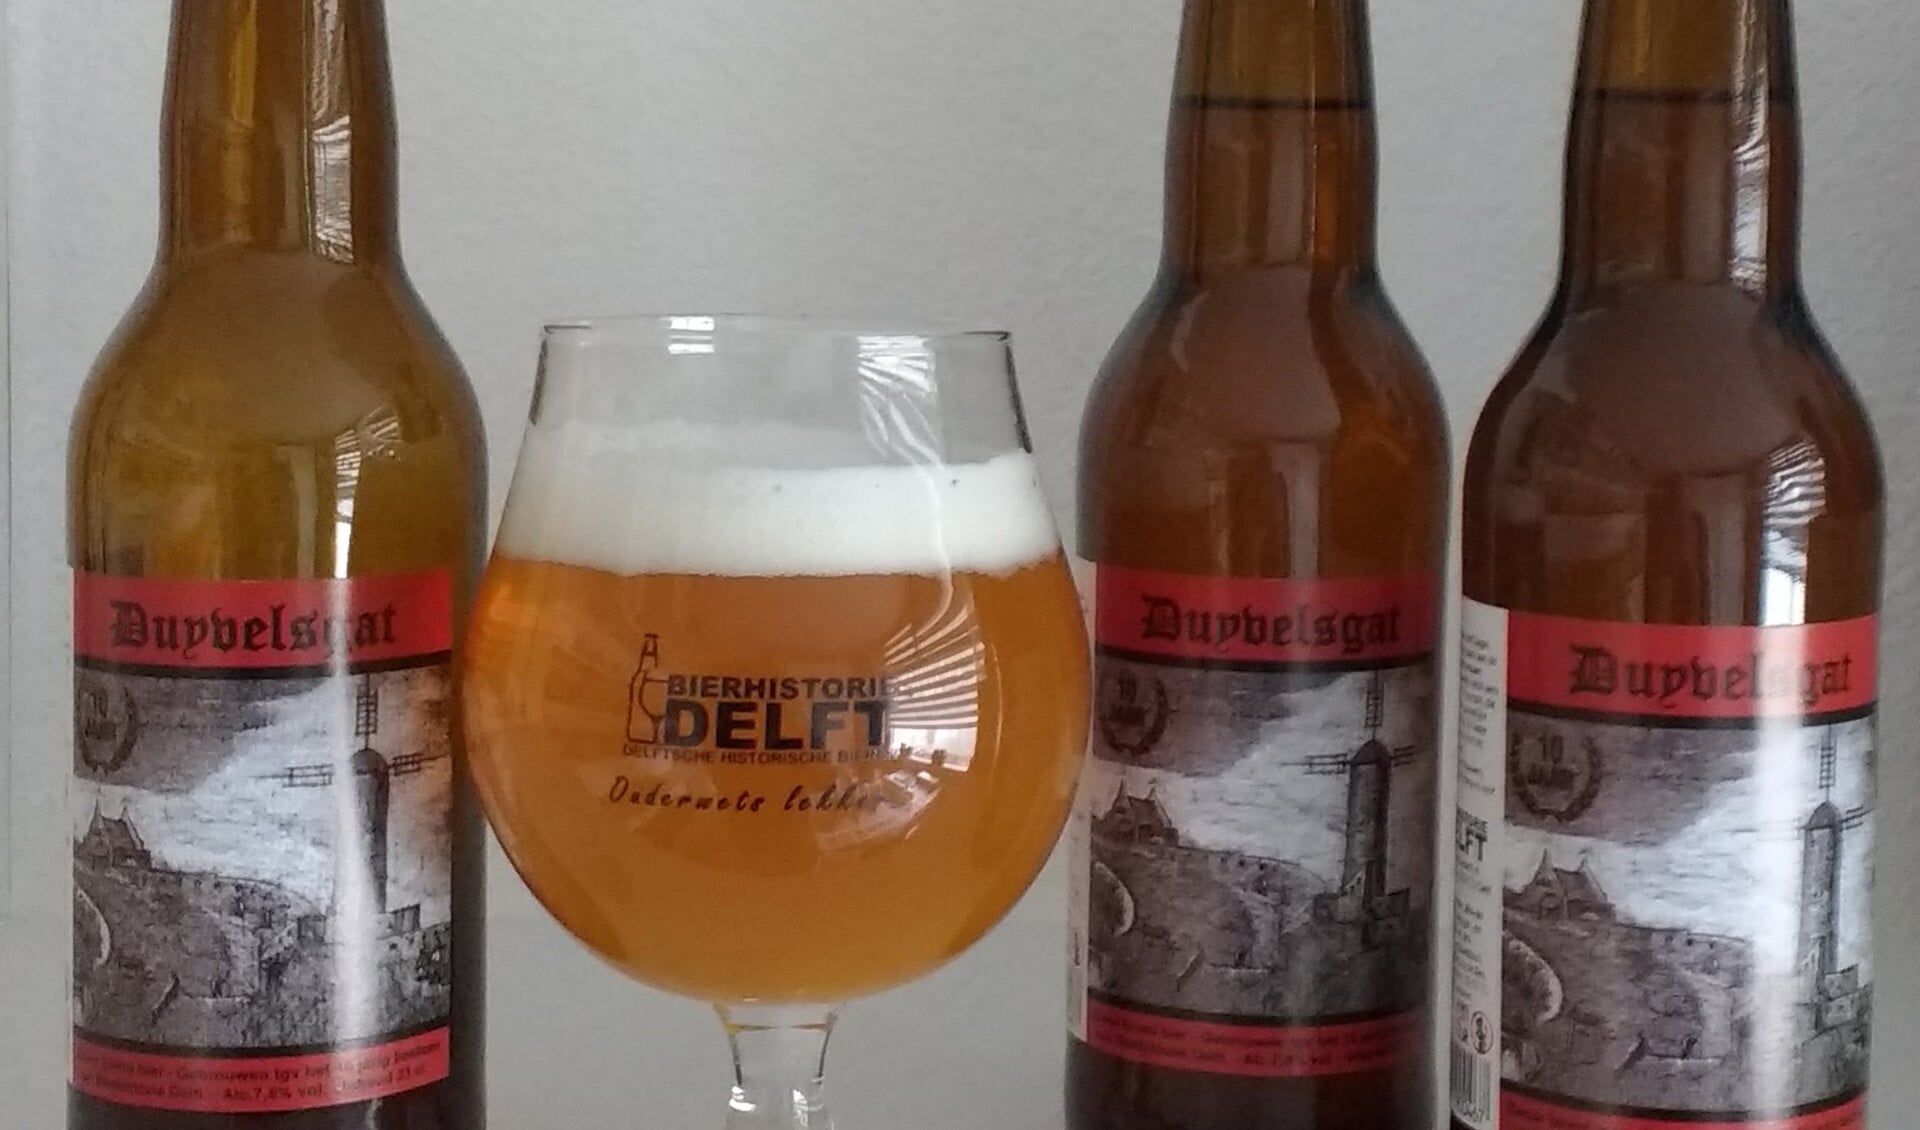 Duyvelsgat: het nieuwste biertje van Bierhistorie Delft. 